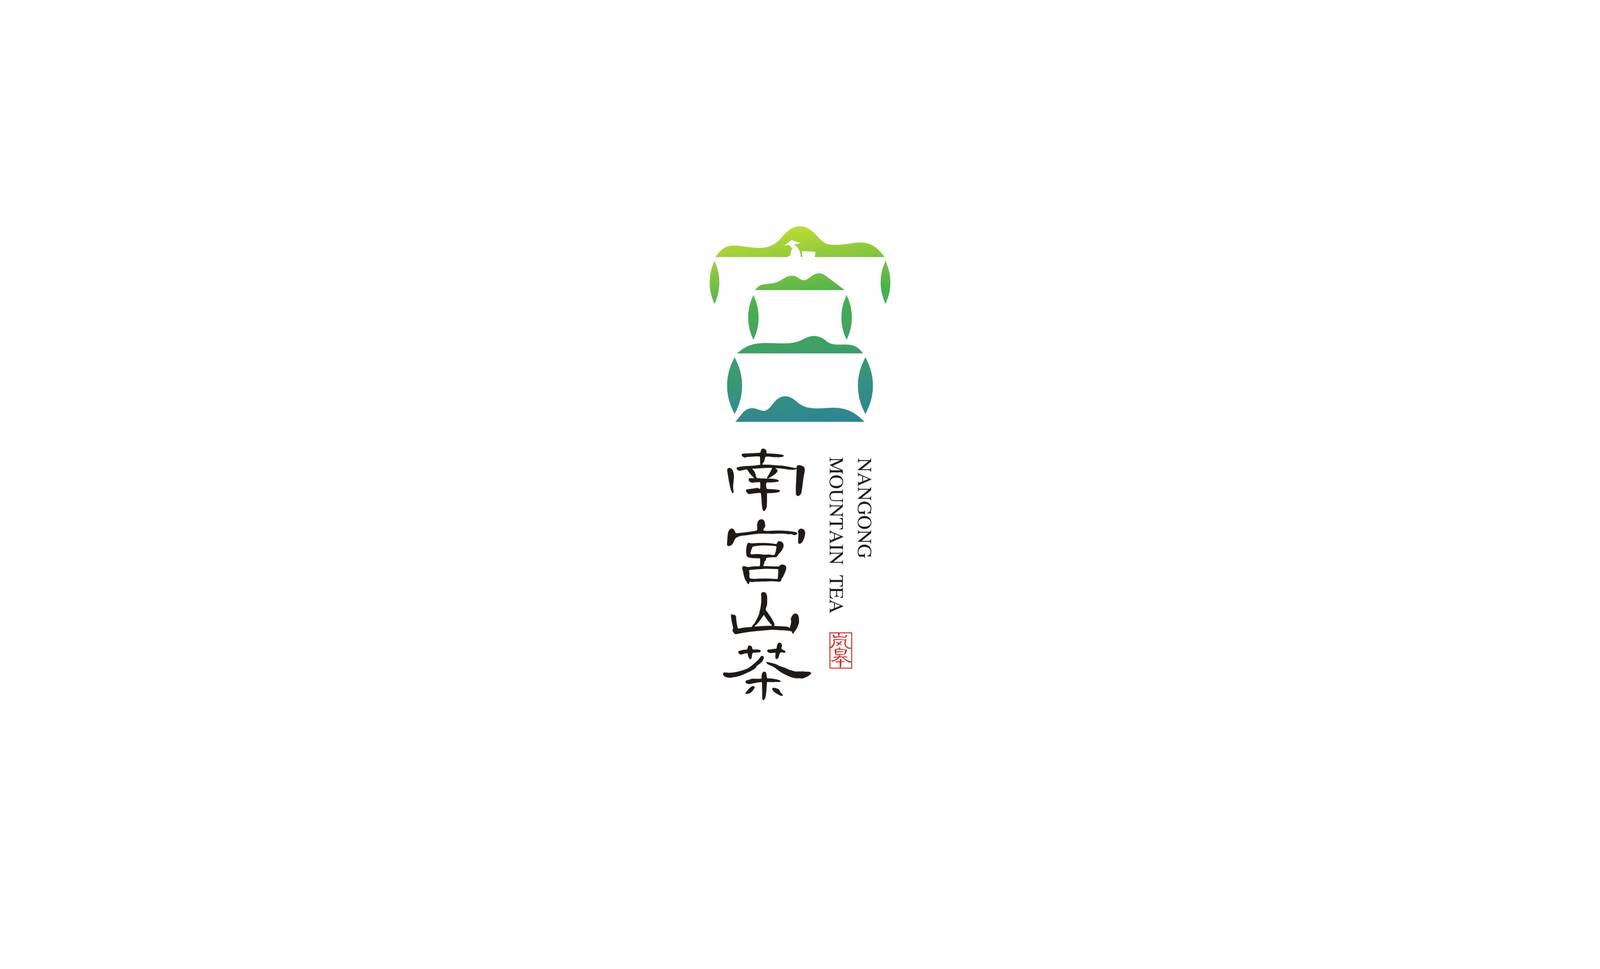 南宫山茶区域农产品茶叶类品牌标志LOGO-第11张